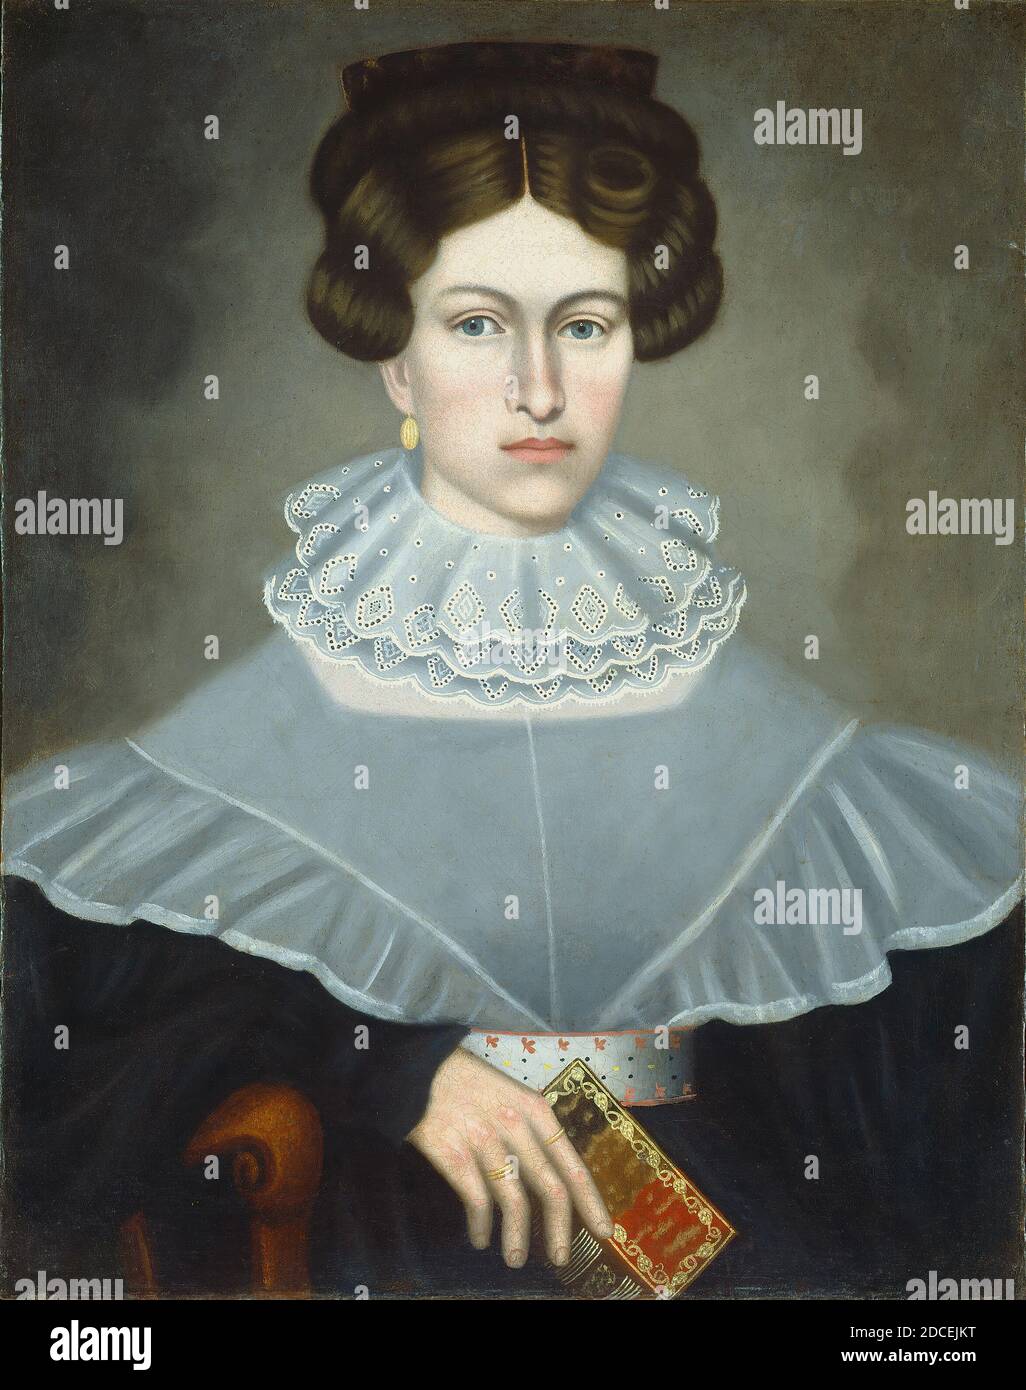 Erastus Salisbury Field, (artiste), cuisine américaine, 1805 - 1900, femme tenant un livre, c. 1835, huile sur toile, hors tout : 75.7 x 60.5 cm (29 13/16 x 23 13/16 po Banque D'Images